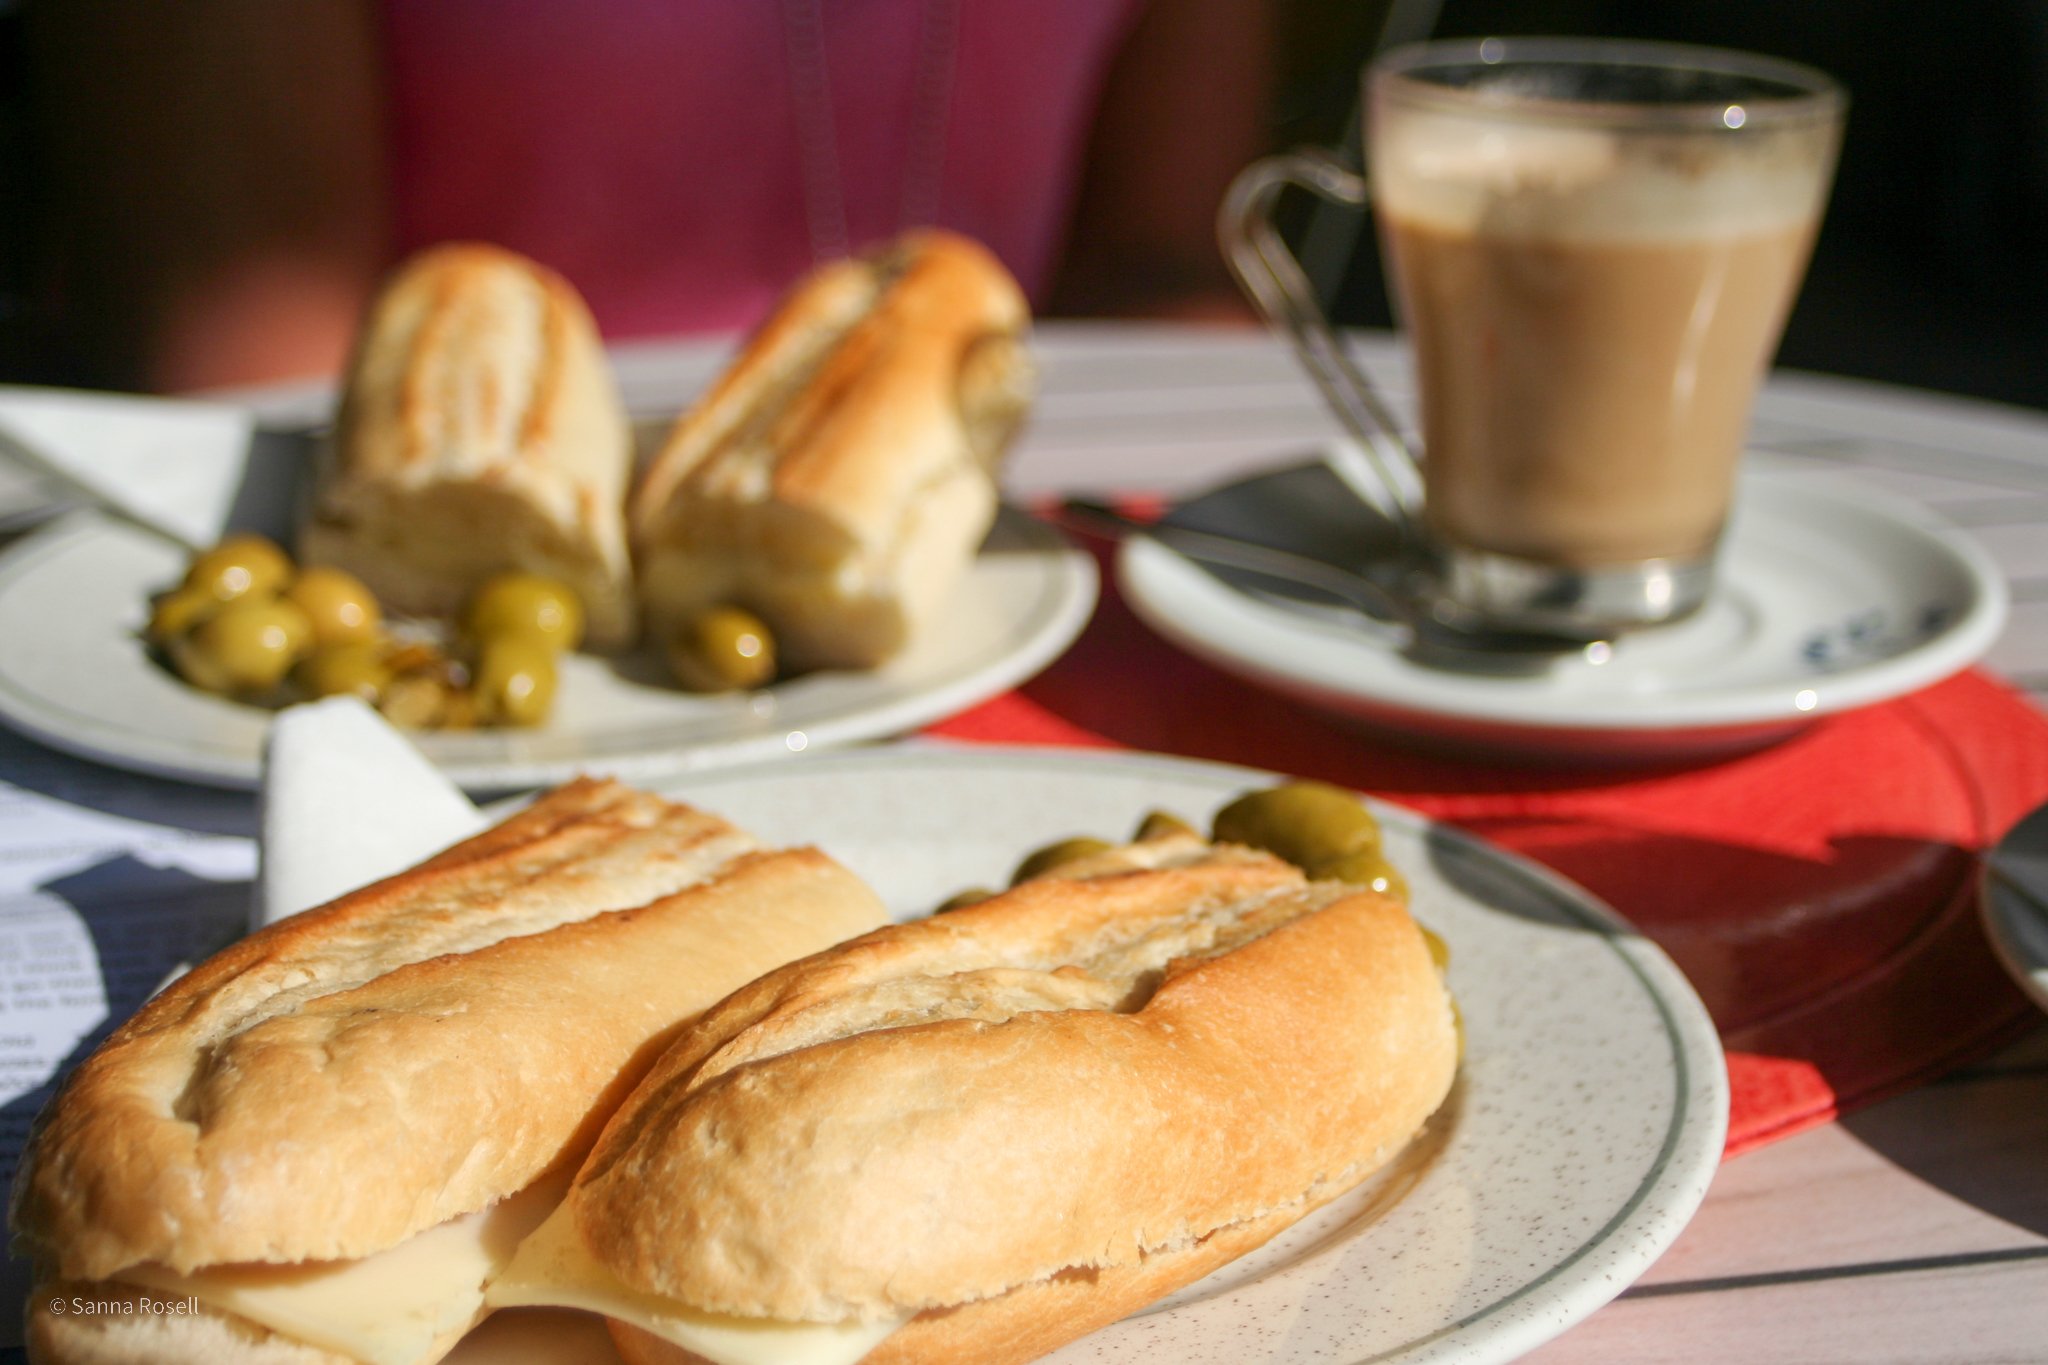 Frukost i Spanien intas runt 11-tiden, med kaffe och bocadillo (smörgås).